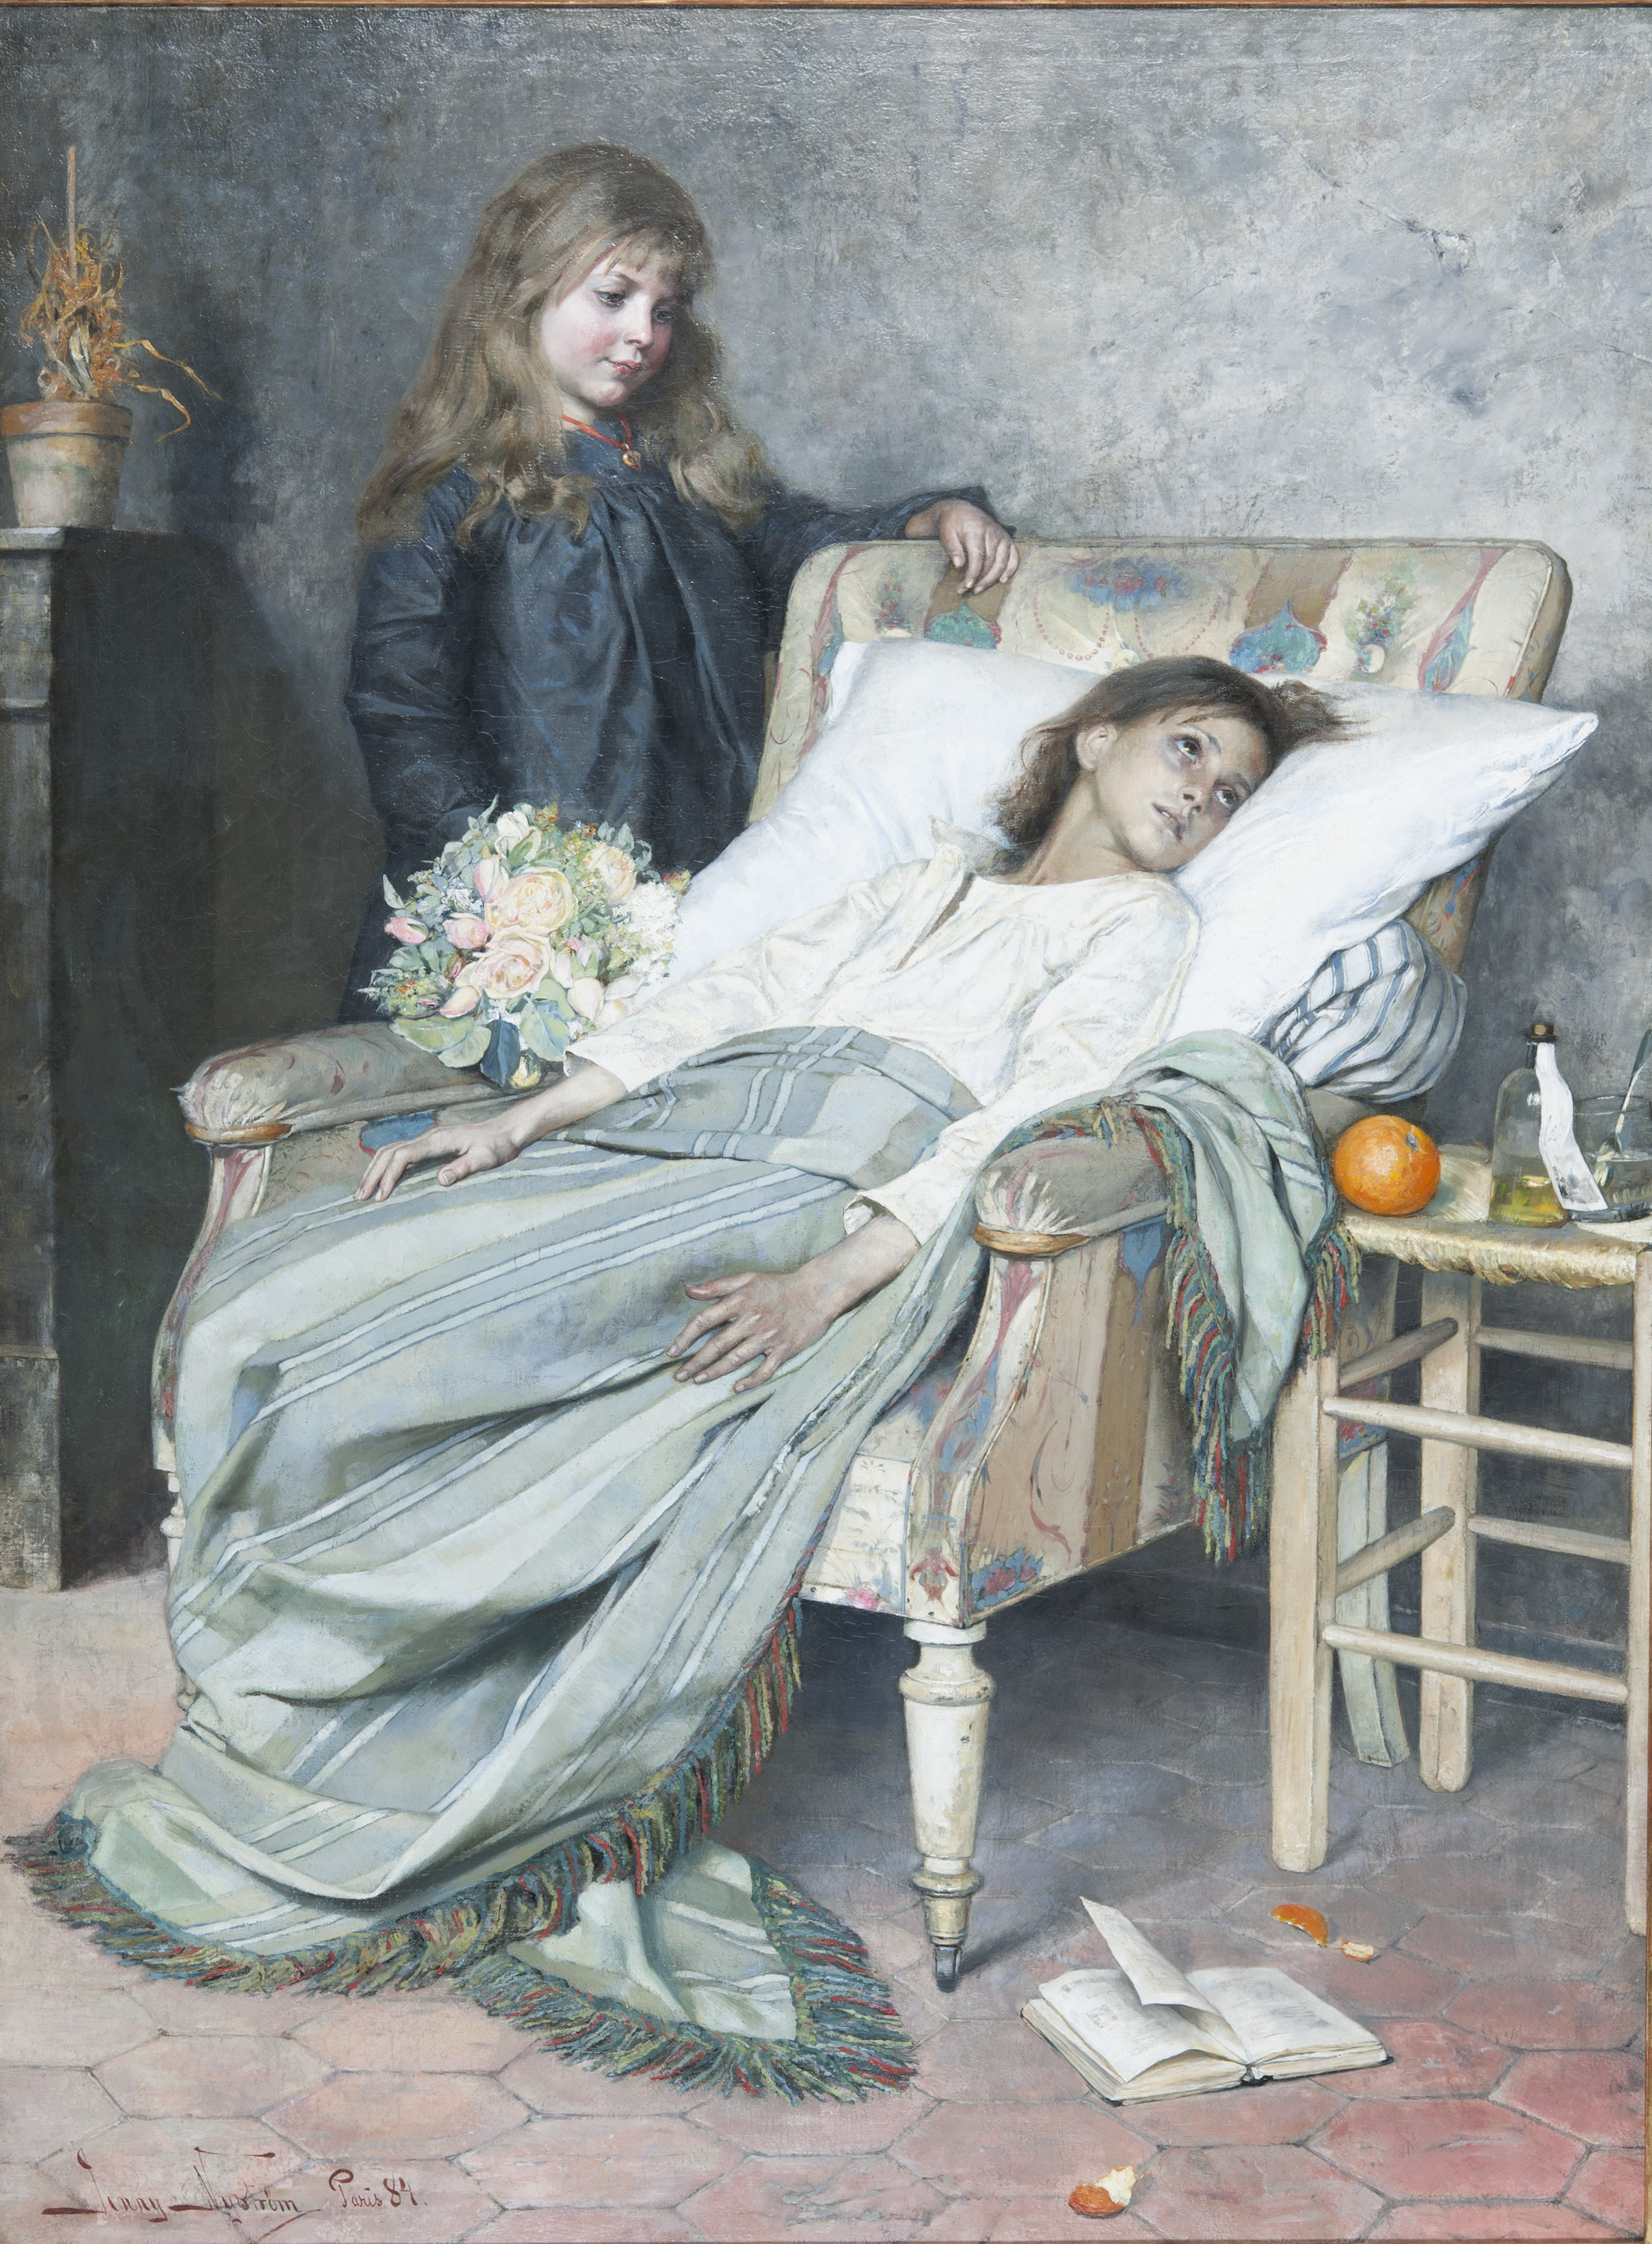 La convalescente by Jenny Nyström - 1884 - 154 x 115 cm 